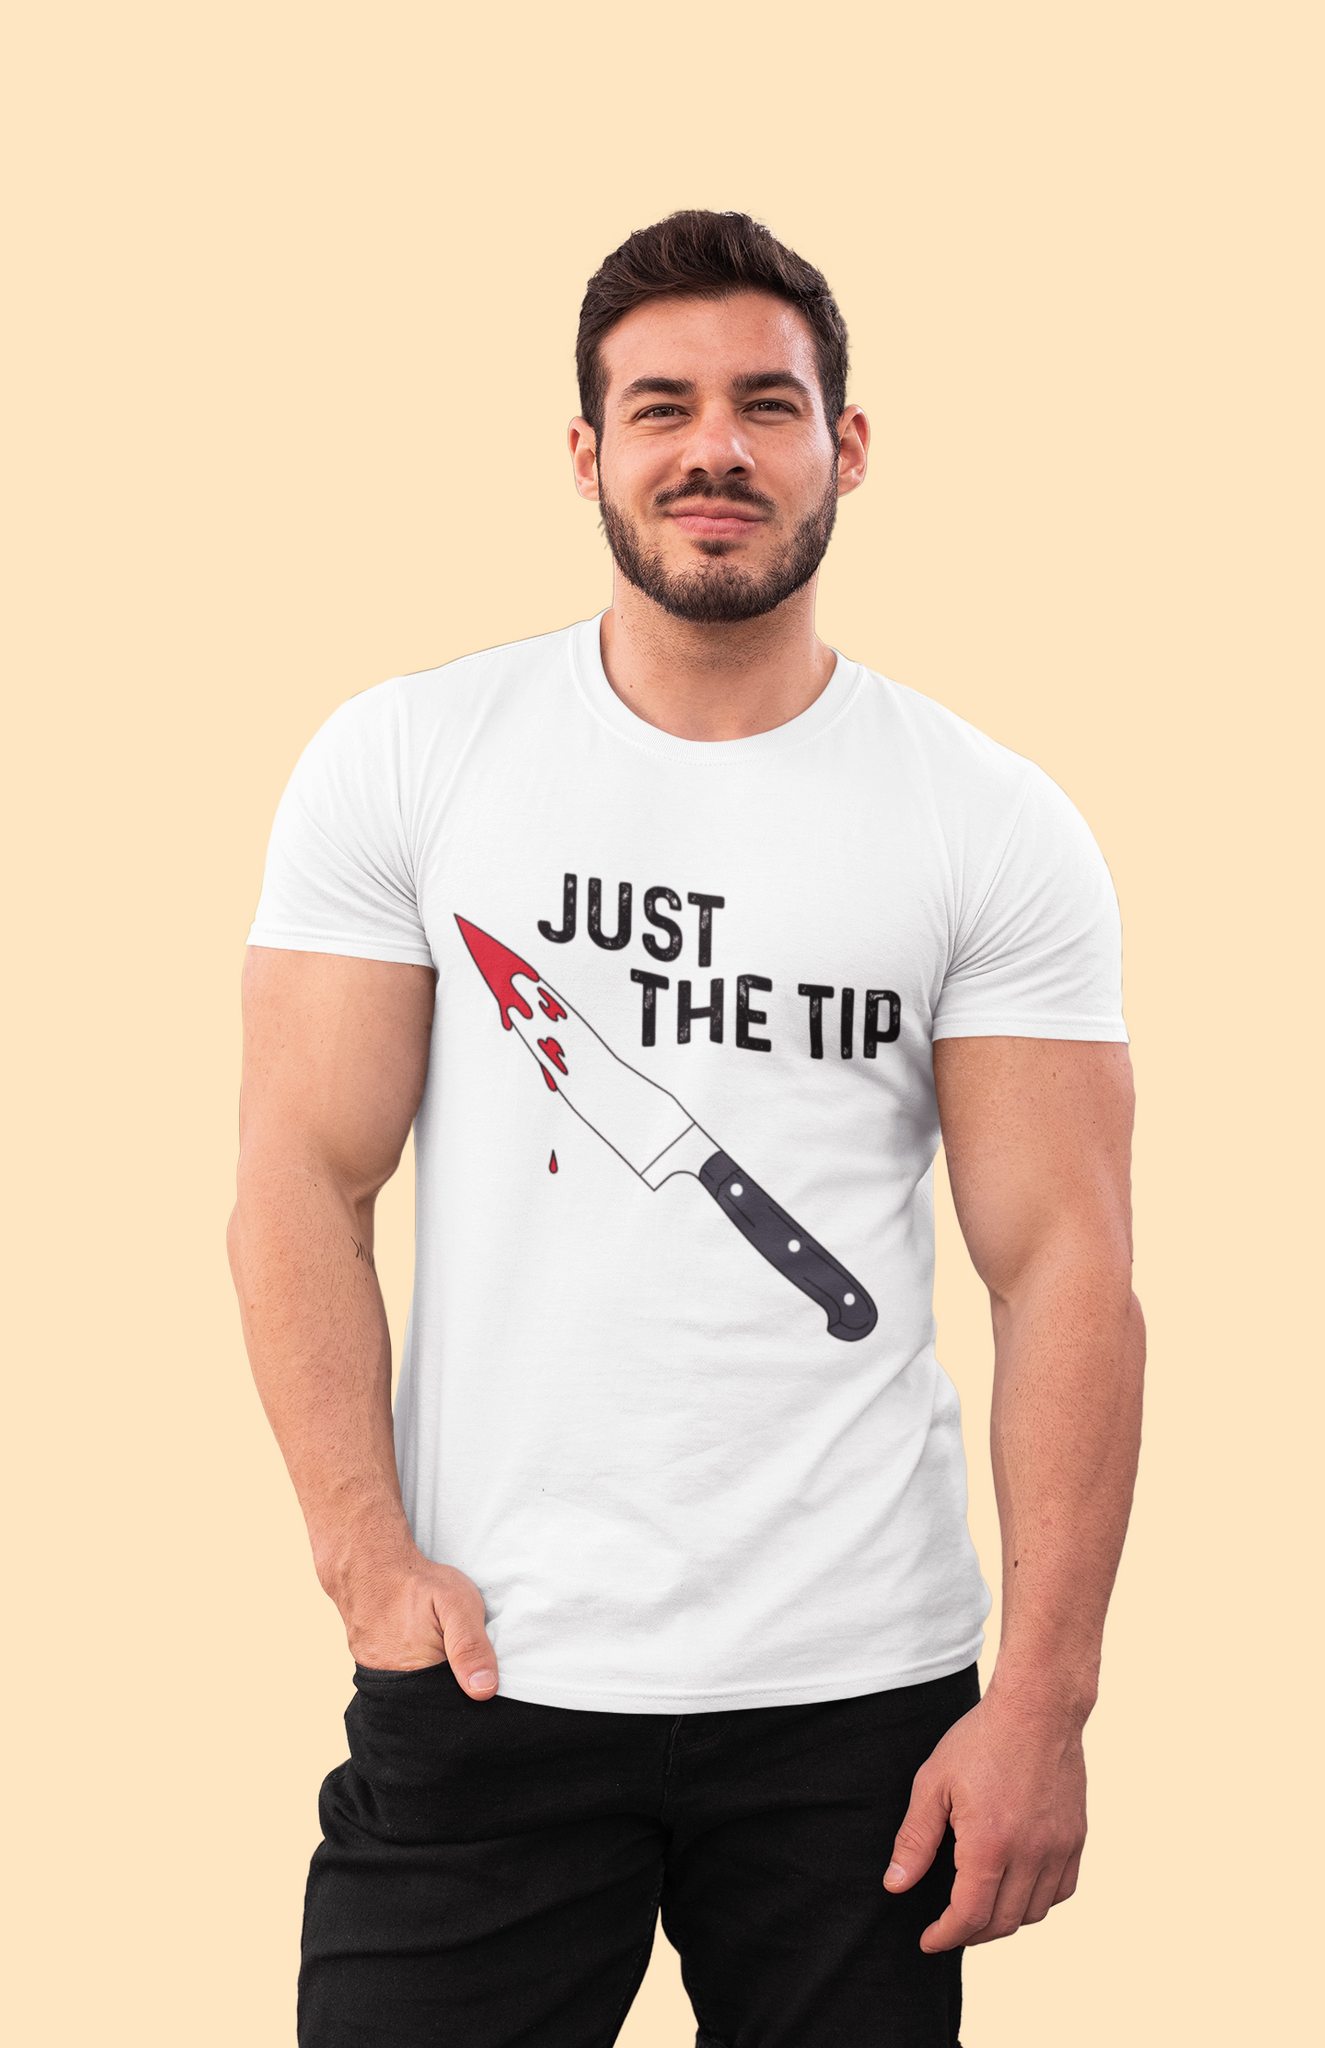 Chucky T Shirt, Just The Tip T Shirt, Horror Character Shirt, Halloween Gifts